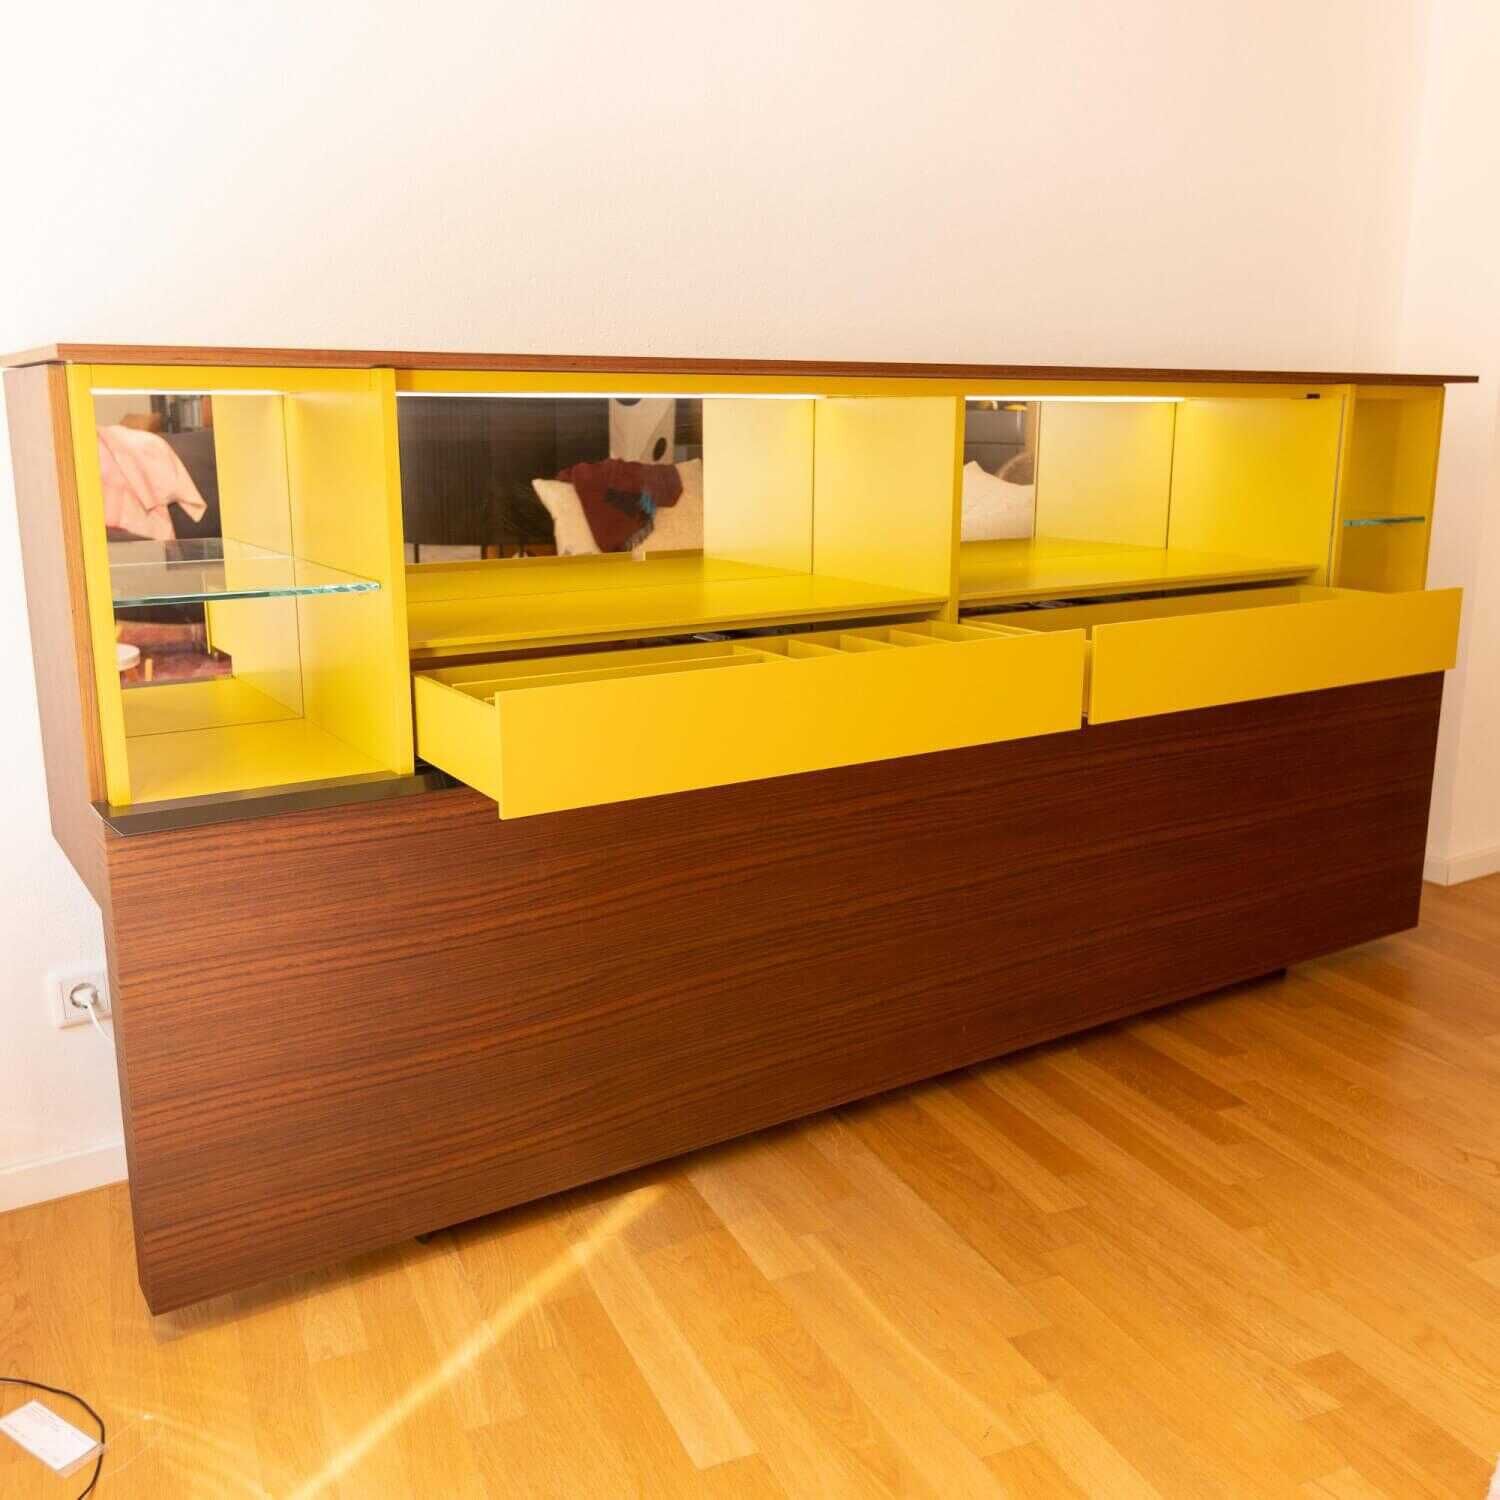 Gallery Low Cupboard Außen Holzfarbe W20 Mongoi Innen Giallo Mustard Rückwand Spiegel Mit Beleuchtun